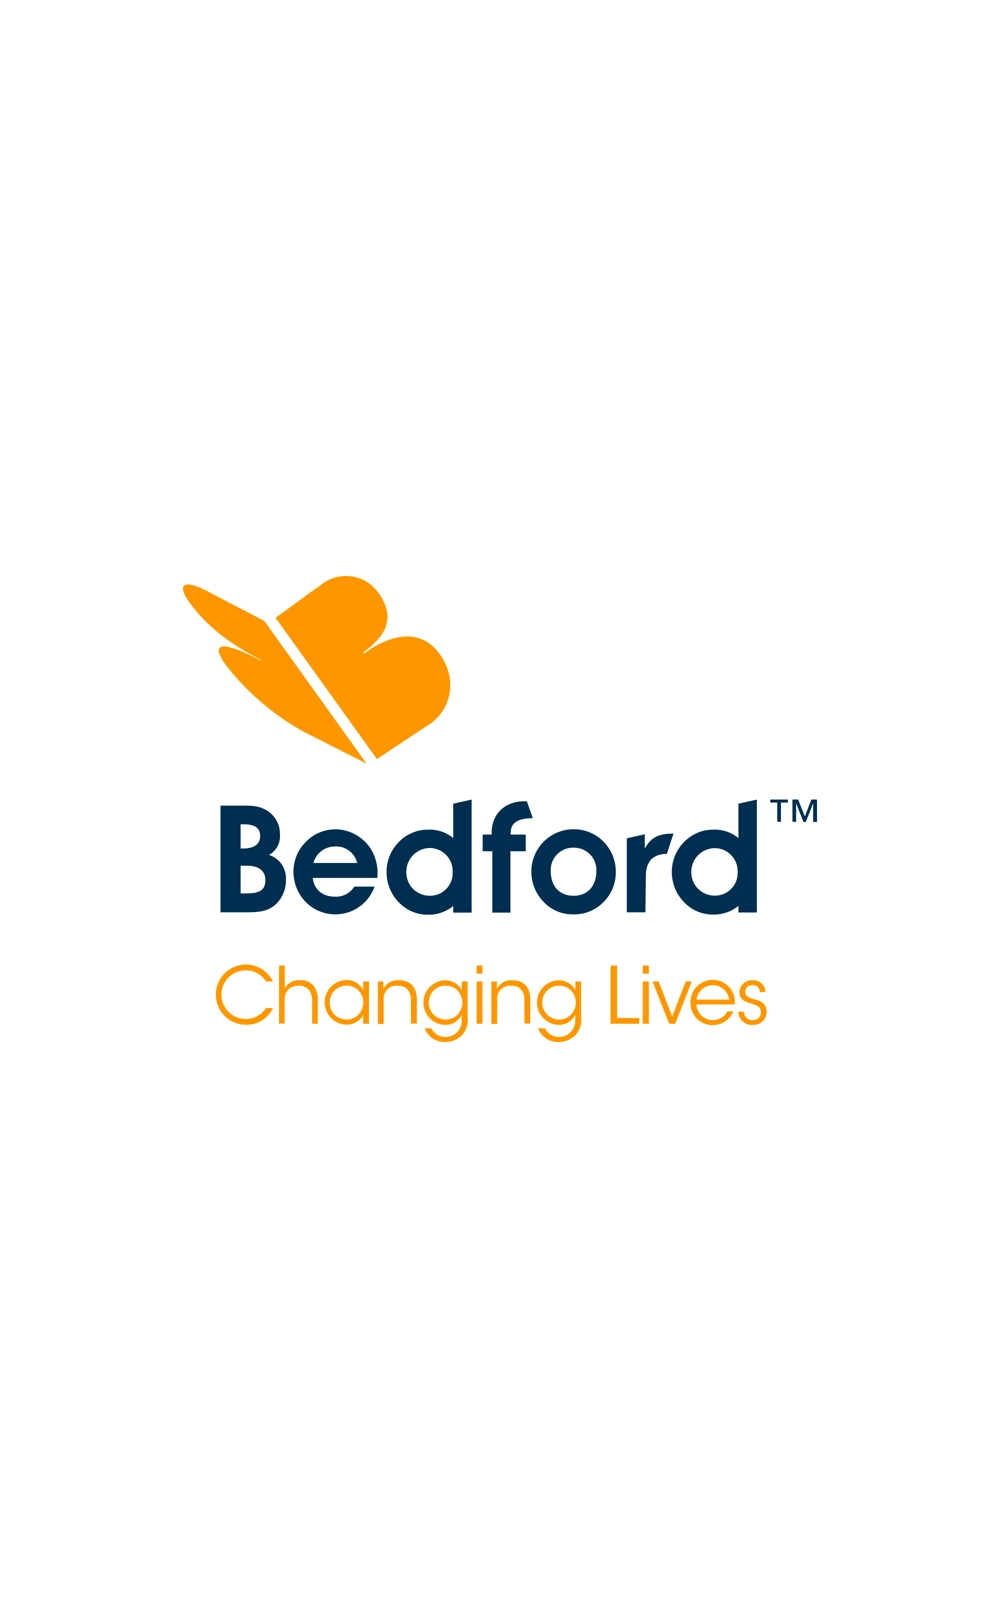 Bedford Group / Yo Francisco Martinez